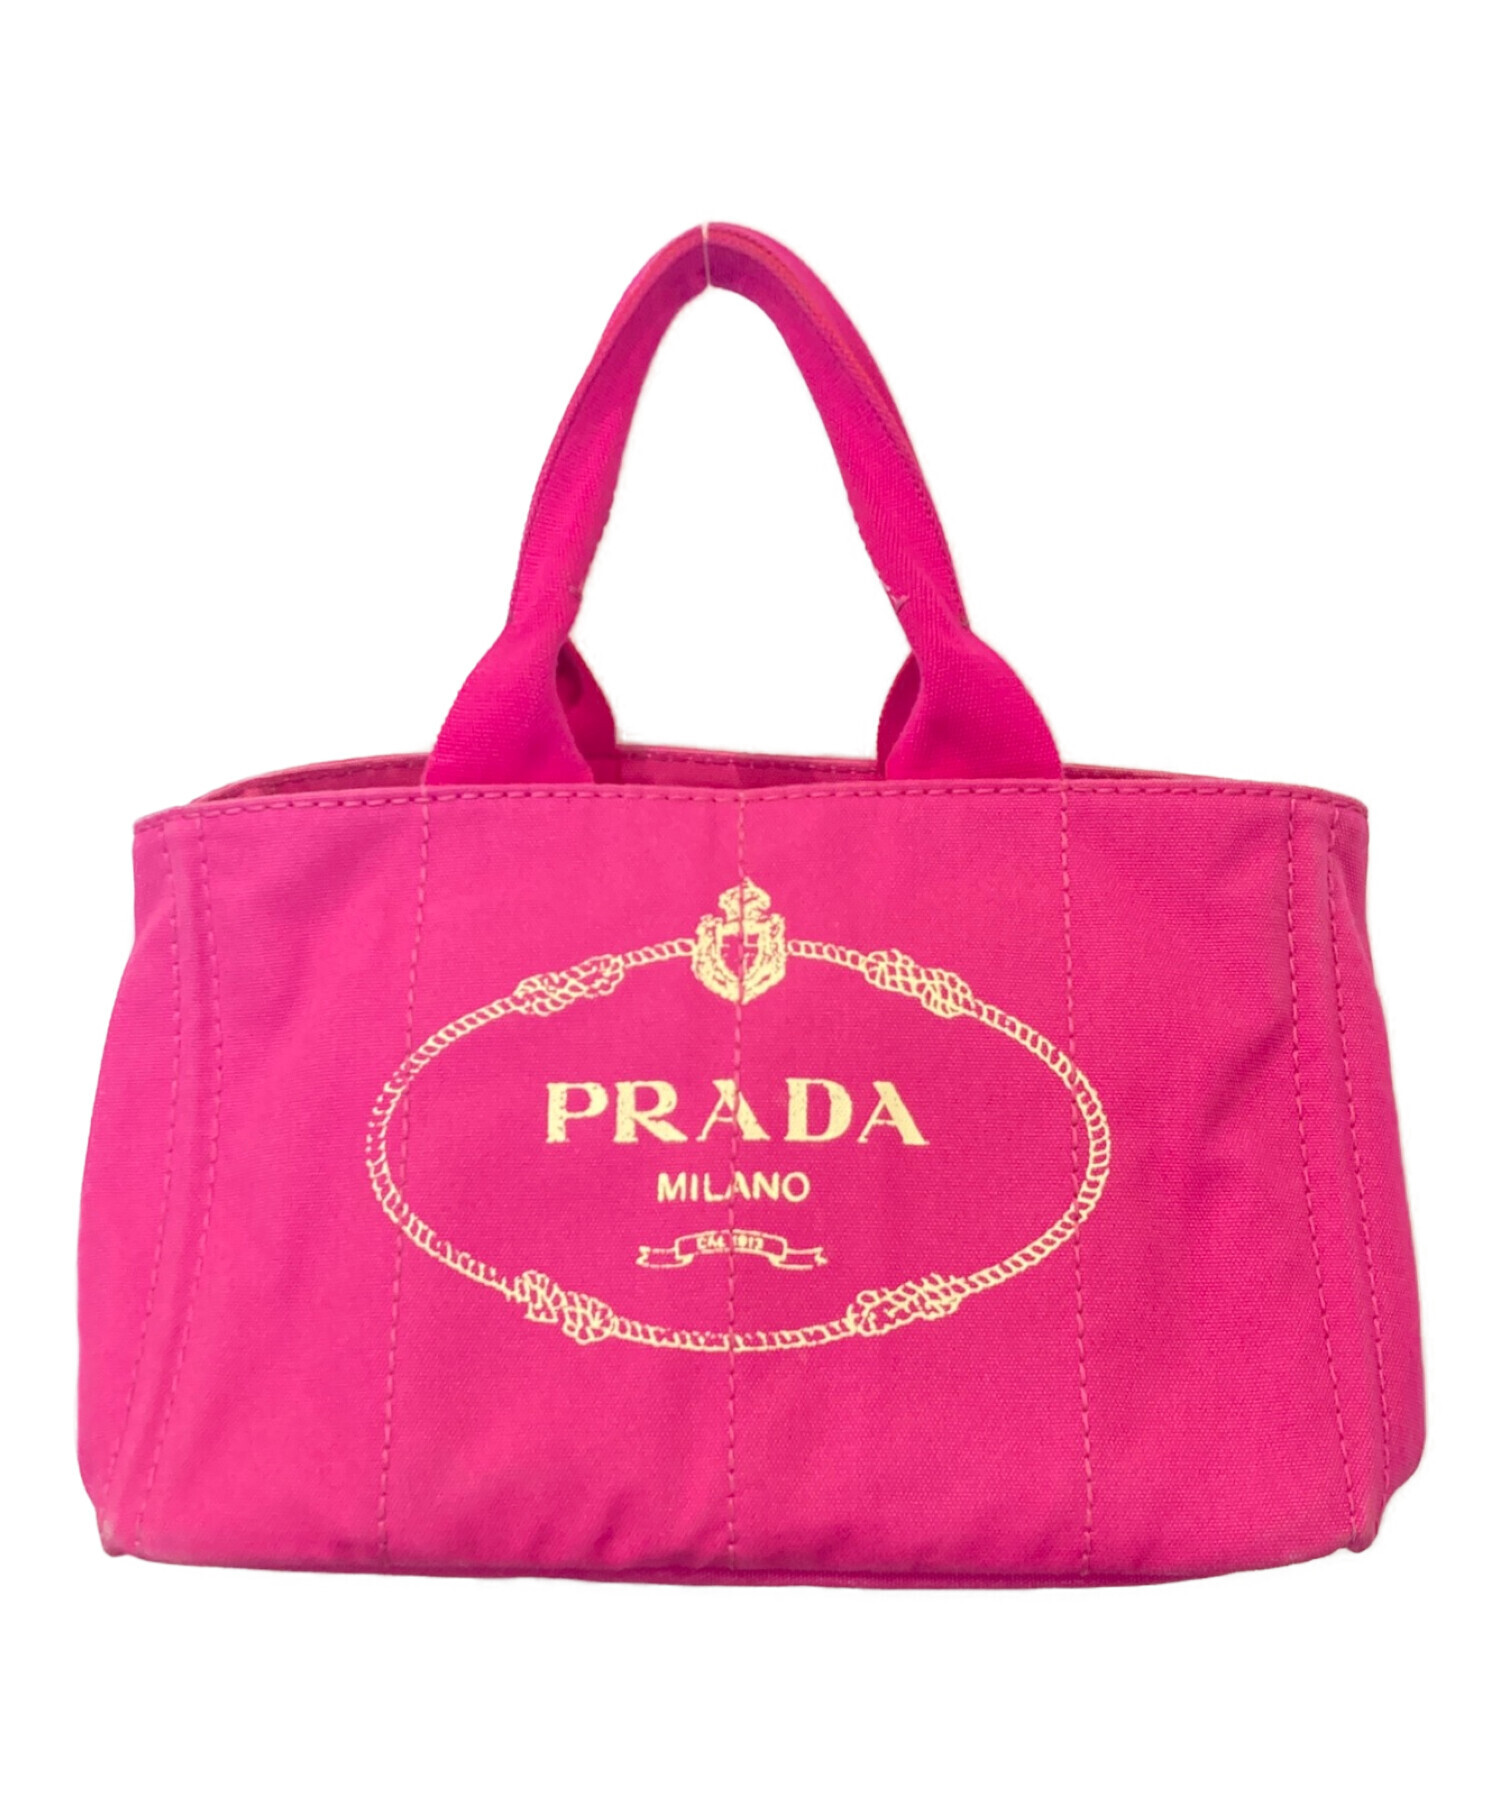 PRADA (プラダ) カナパキャンパストートバッグ ピンク